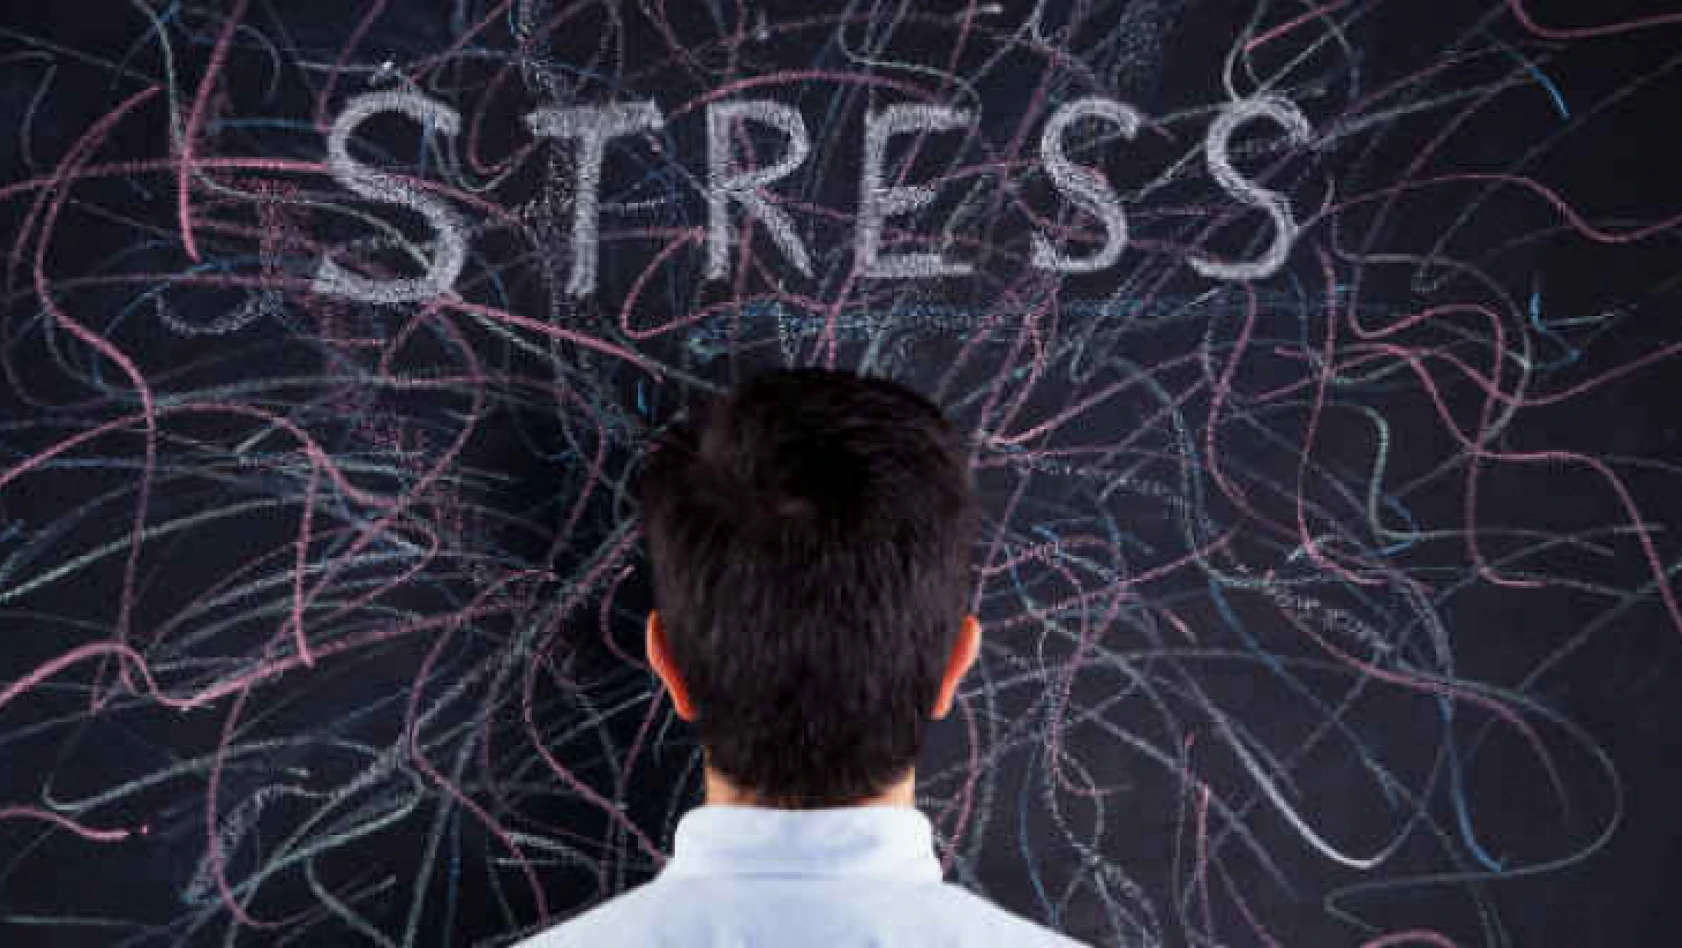 Sağlık çalışanlarının stresle başa çıkmalarına katkı sağlayacak